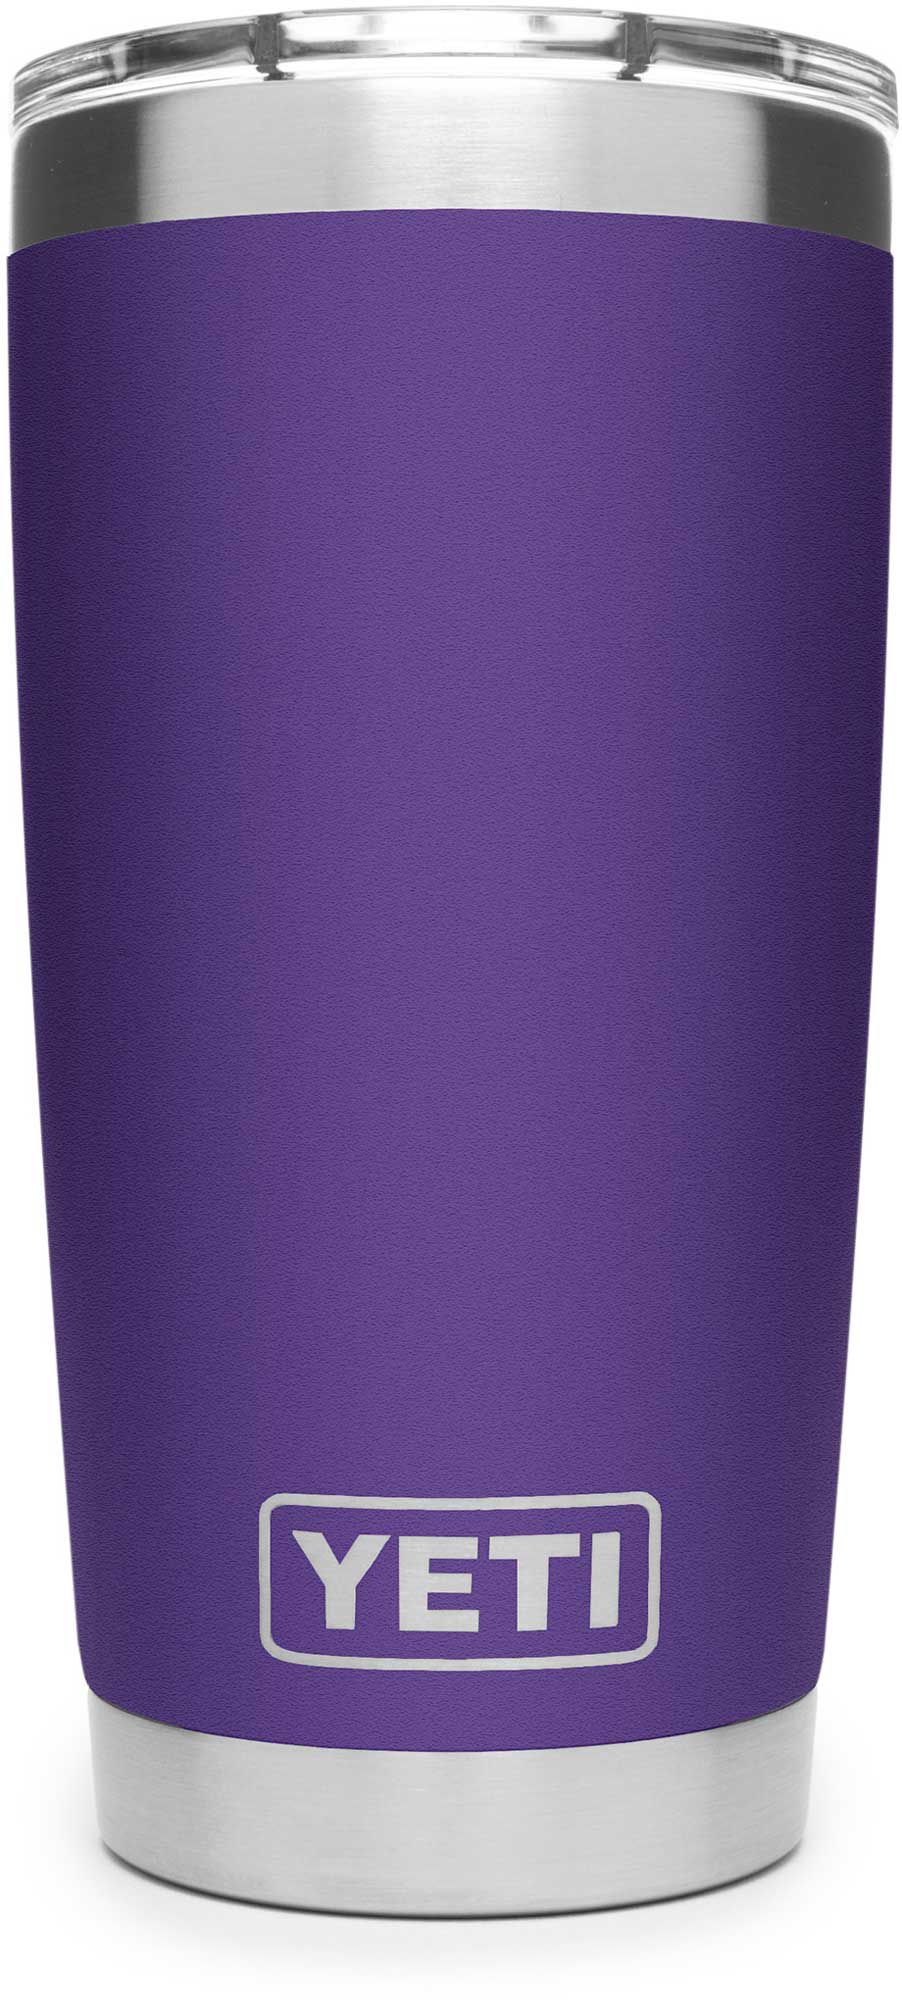 purple yeti